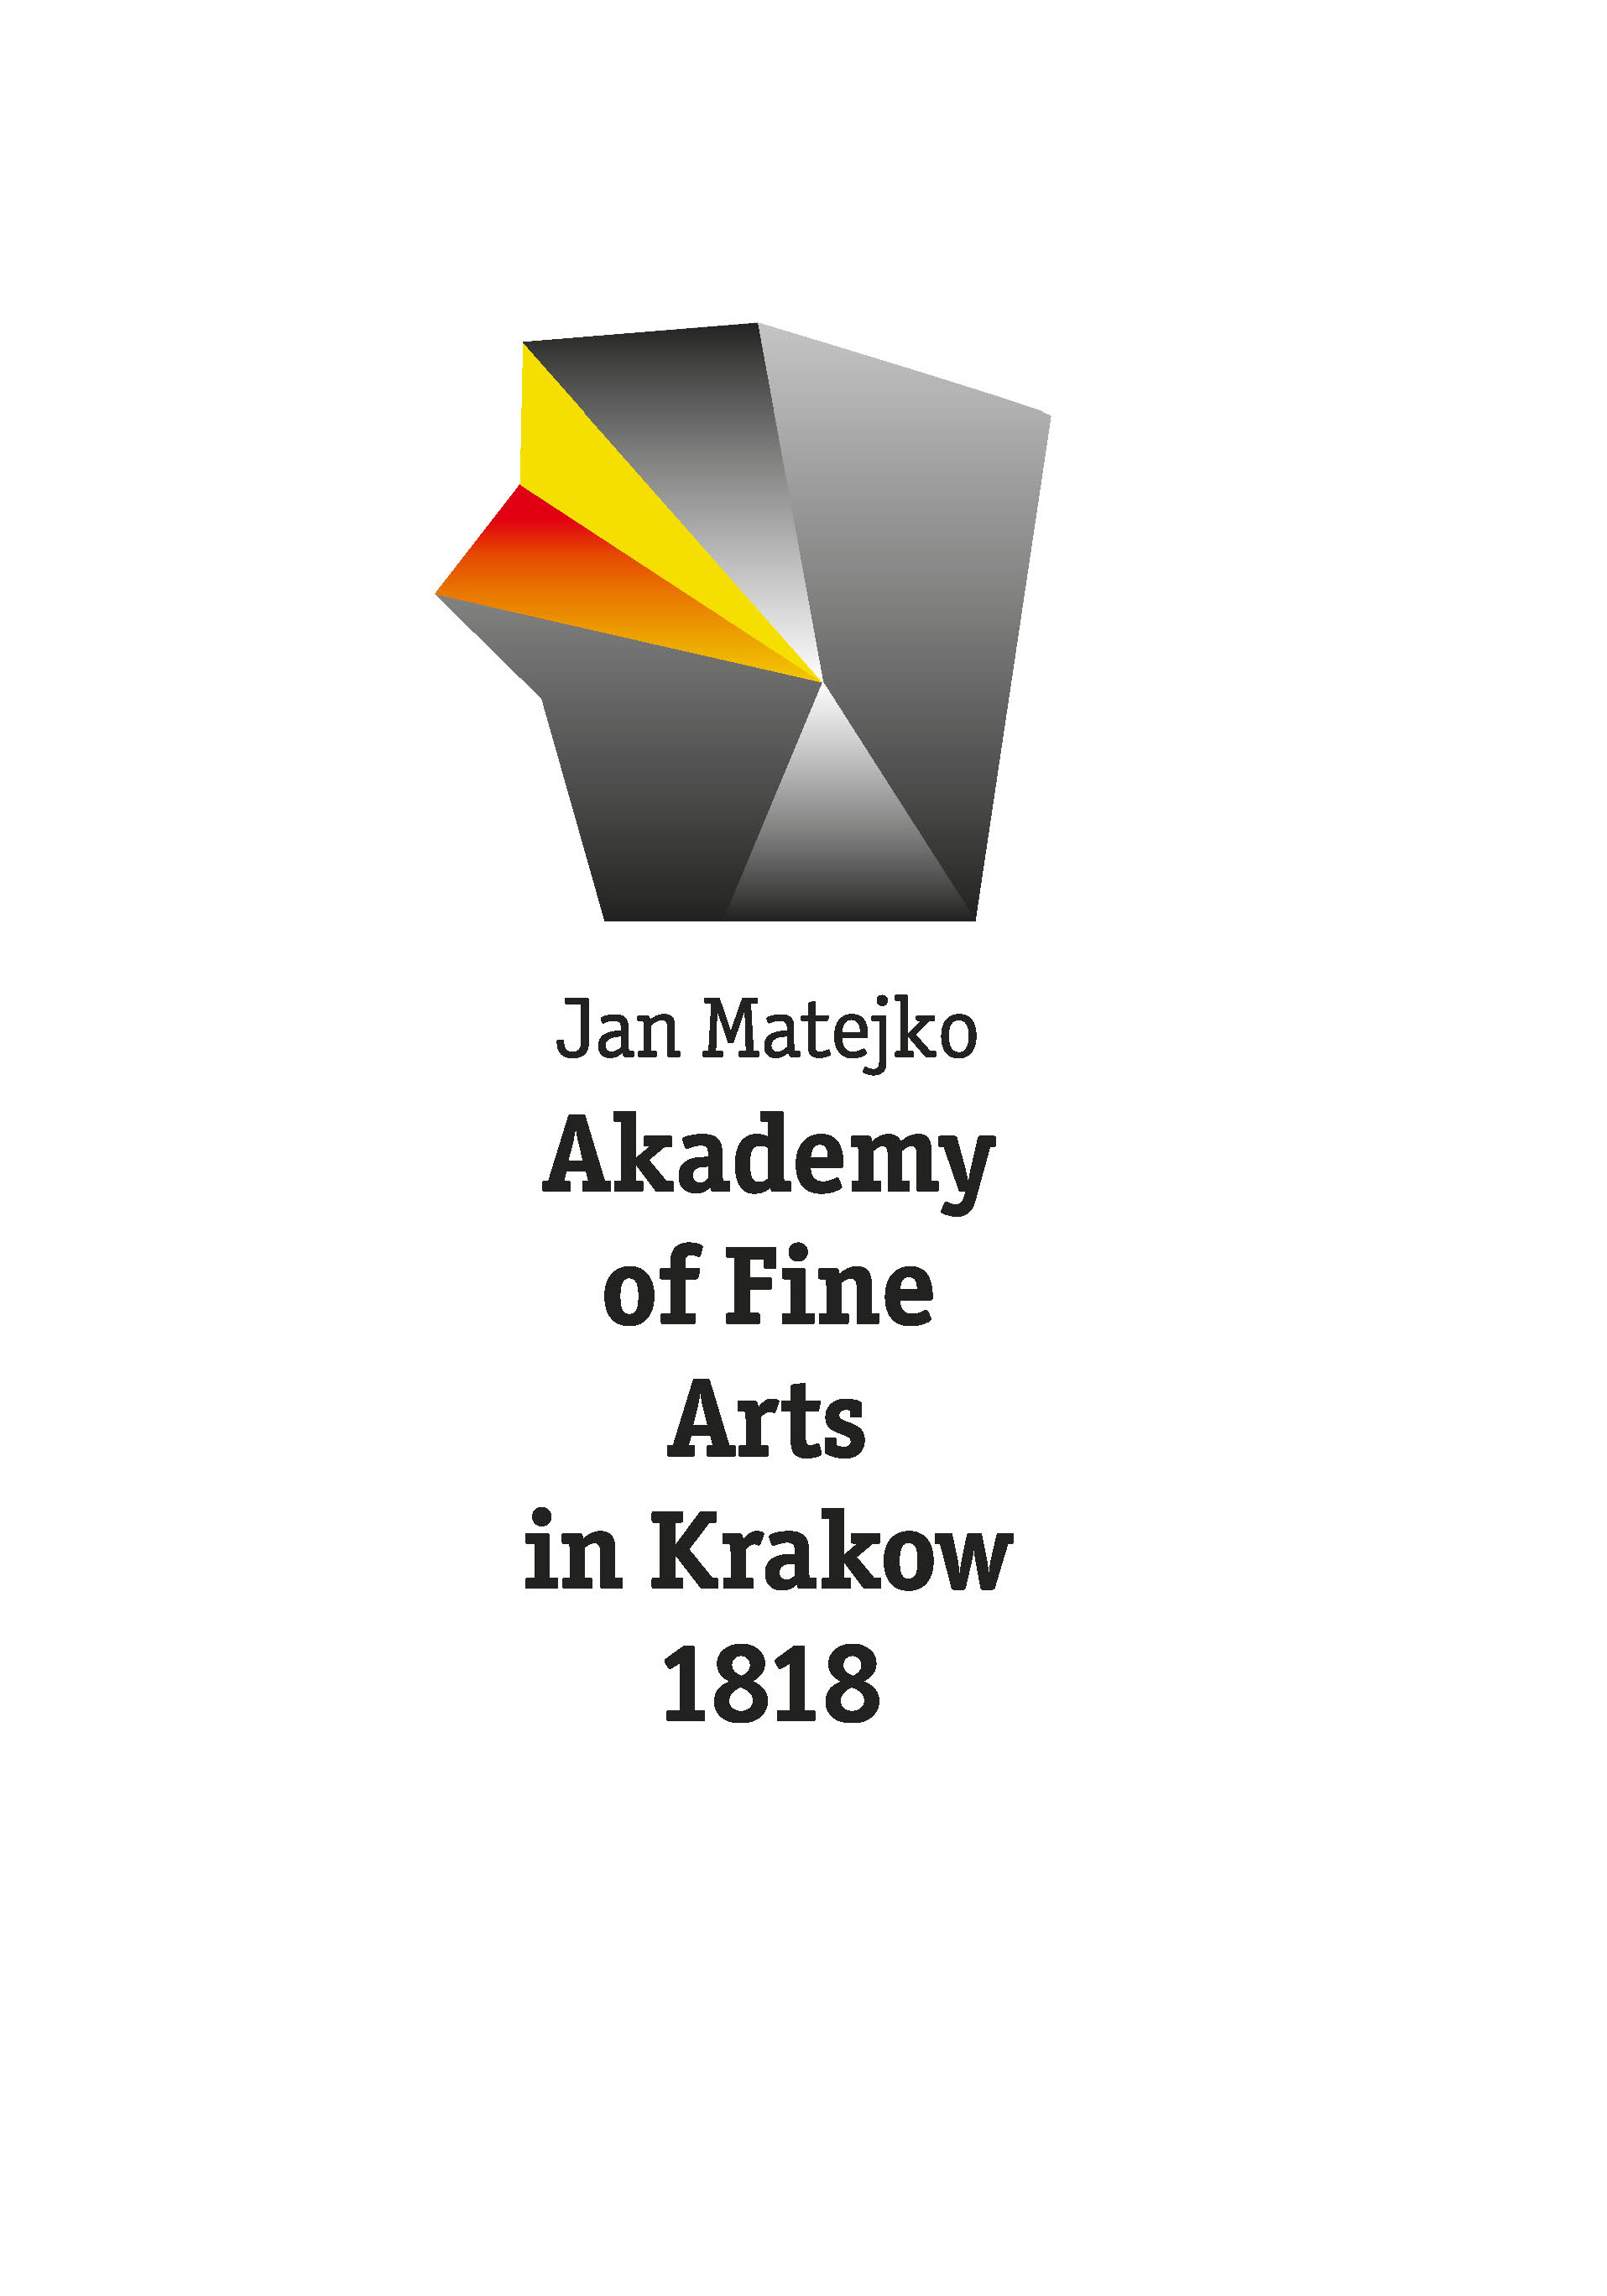 2010, Academy of Fine Arts in Krakow